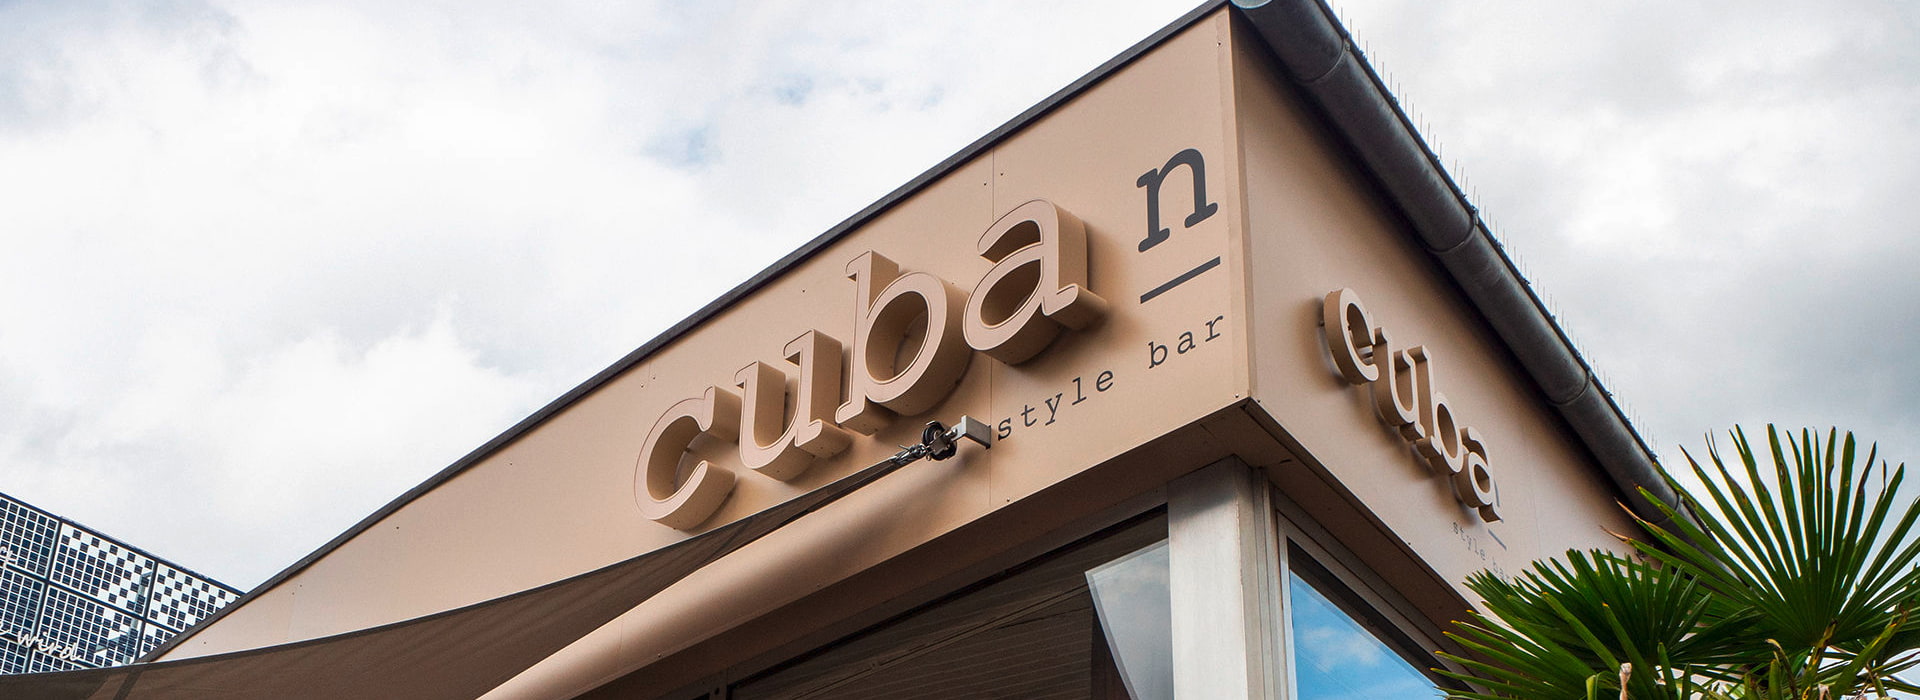 Cafe Bar Cuba | Projekt | Dunkler